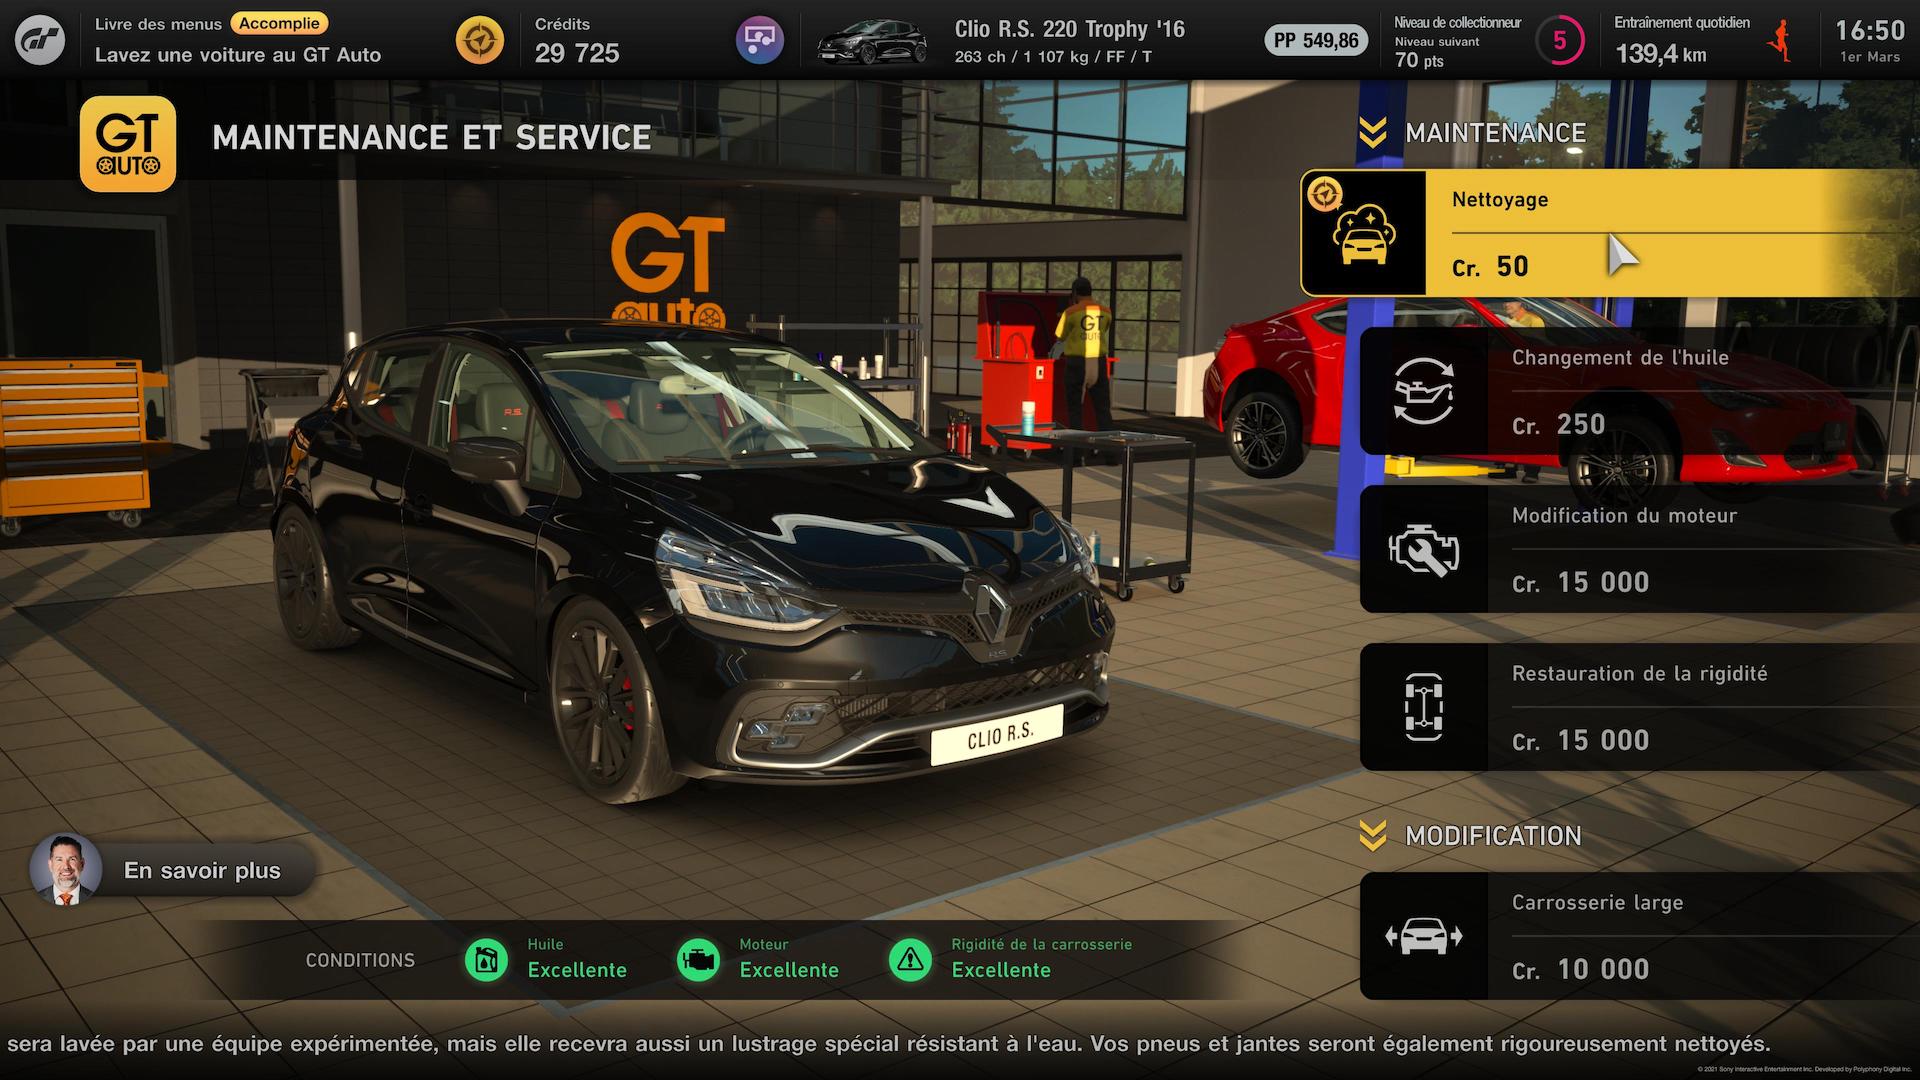 Test Gran Turismo 7 sur PS5 : mon avis en 8 points